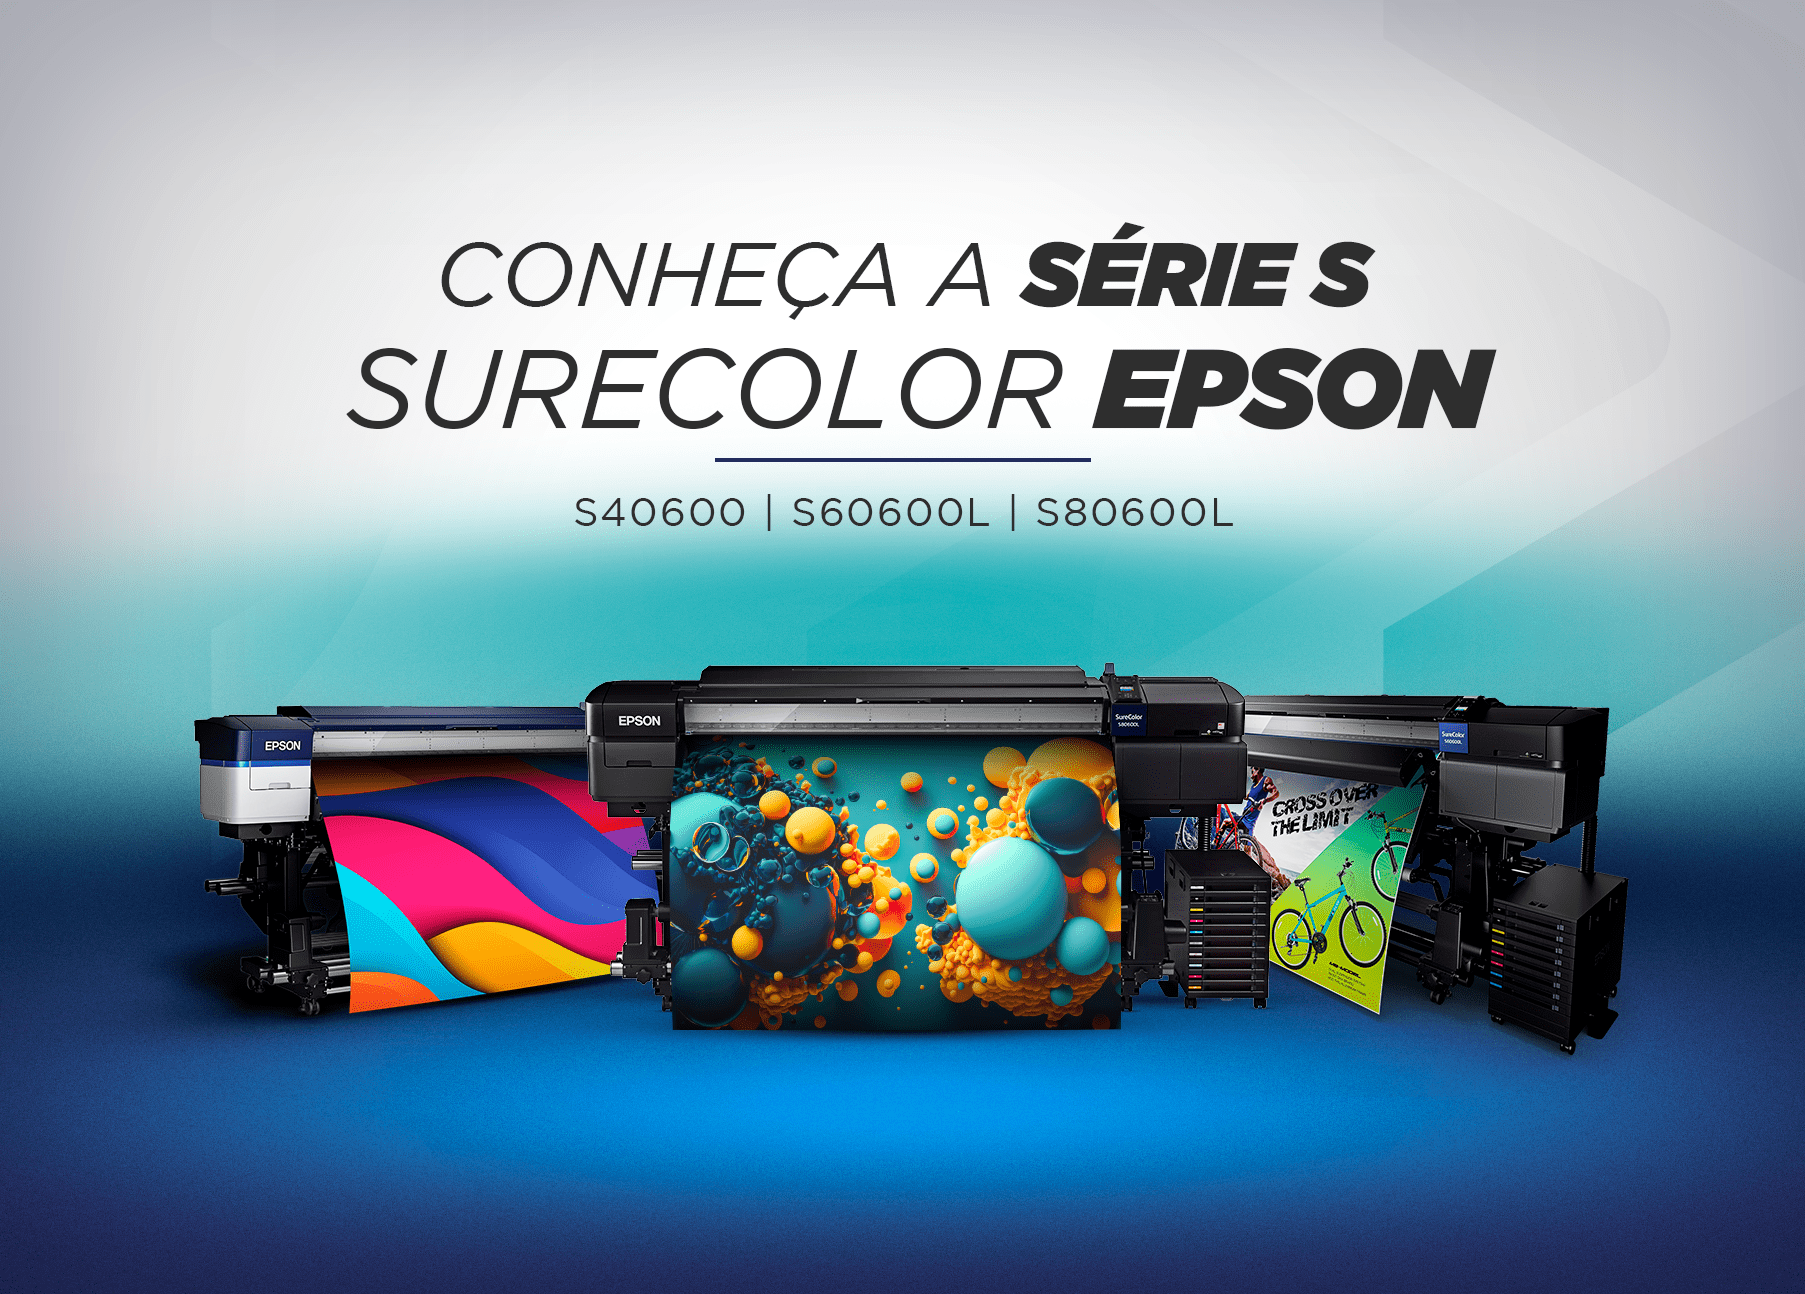 Conheça as impressoras série S SureColor Epson